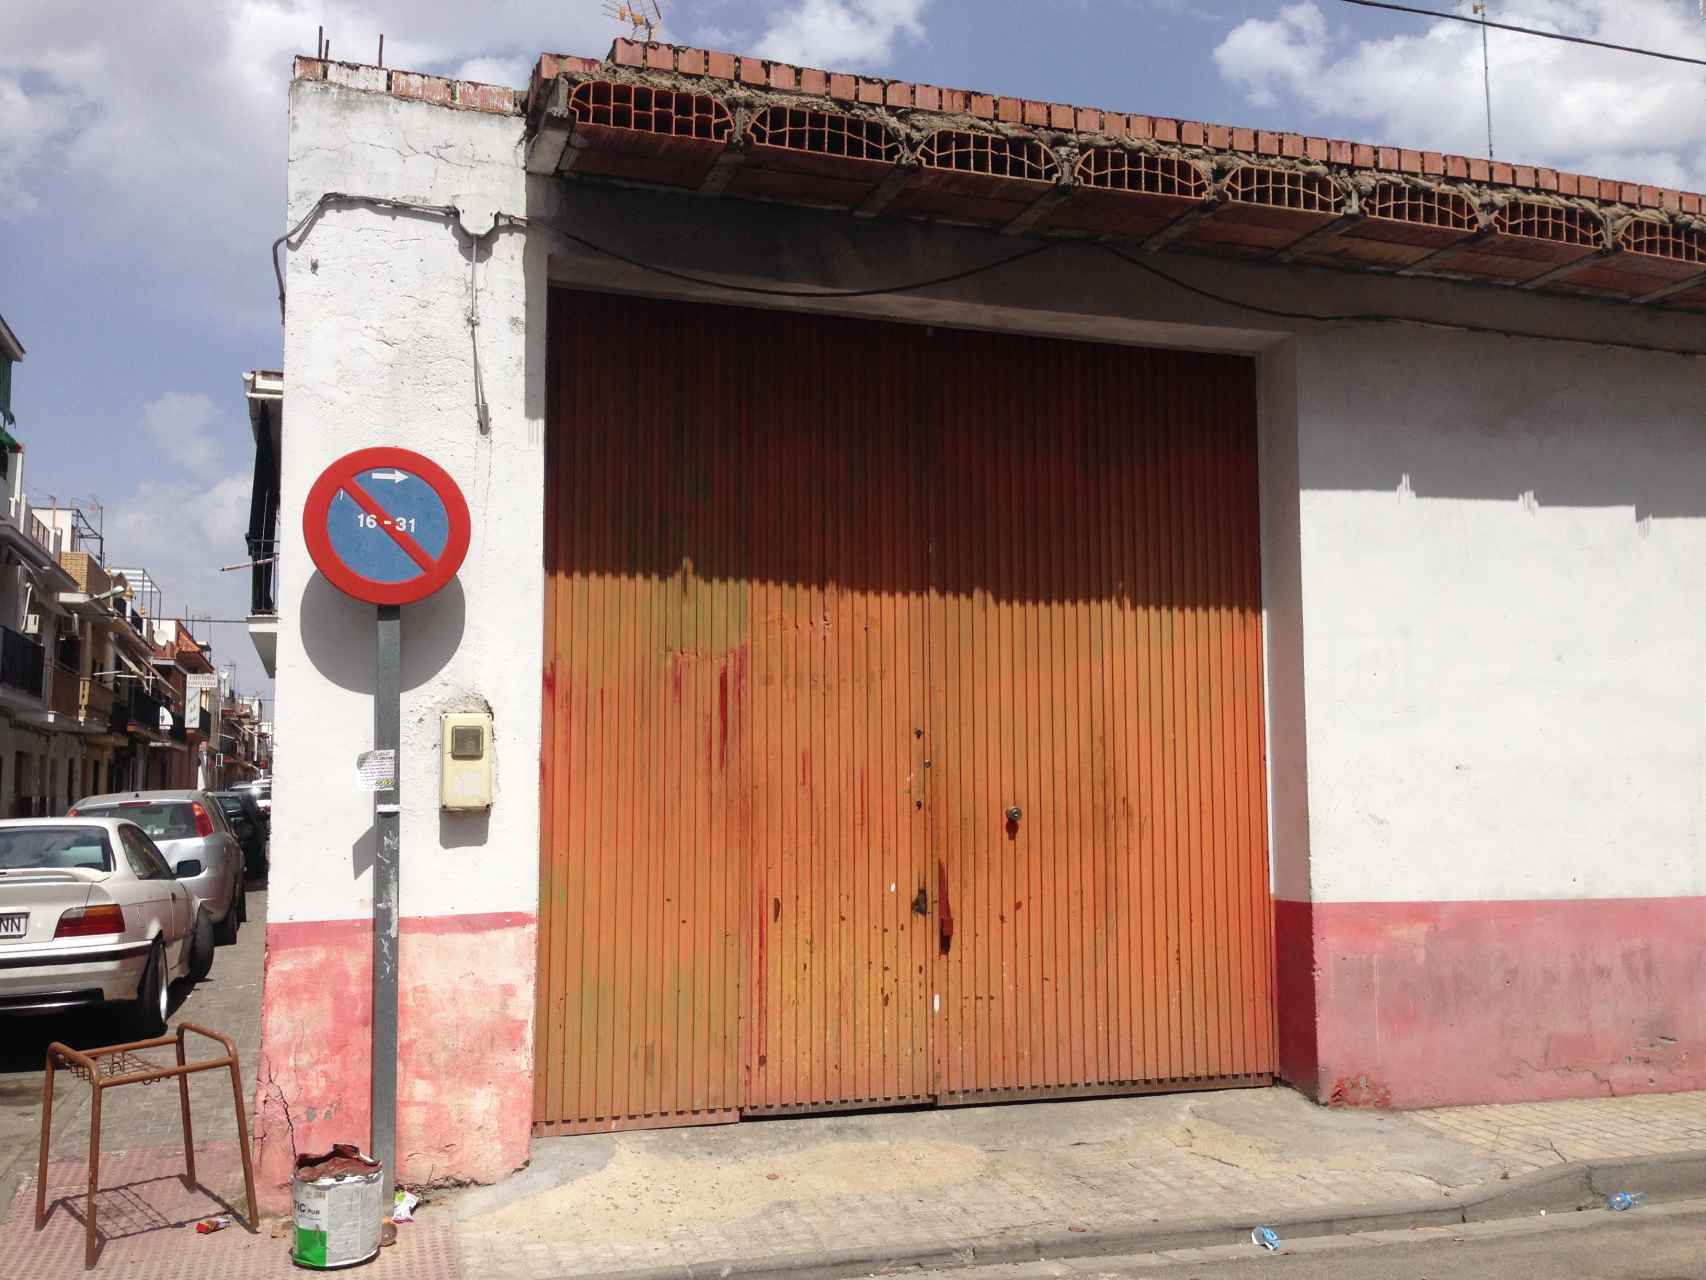 Portal del garaje en cuyo interior Francisco cosió a puñaladas a Encarnación.